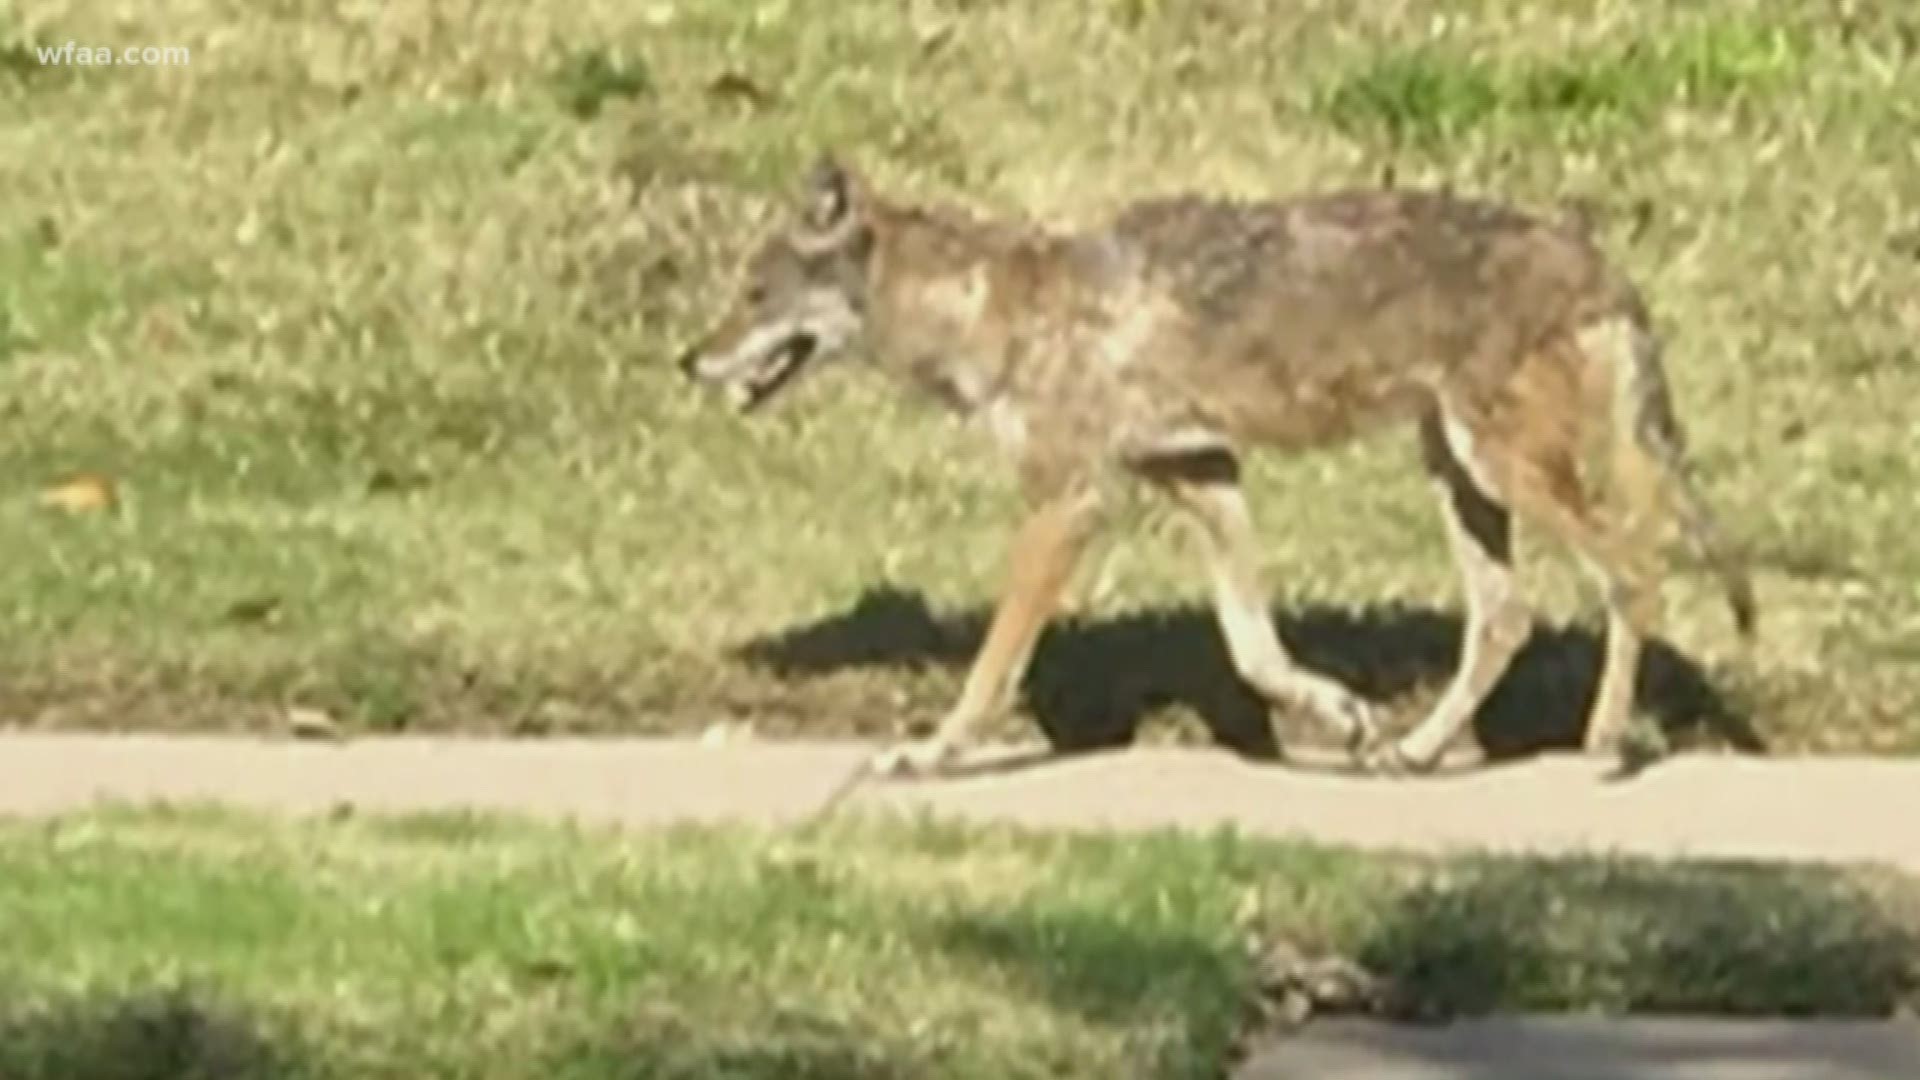 Coyotes put Frisco neighborhood on edge